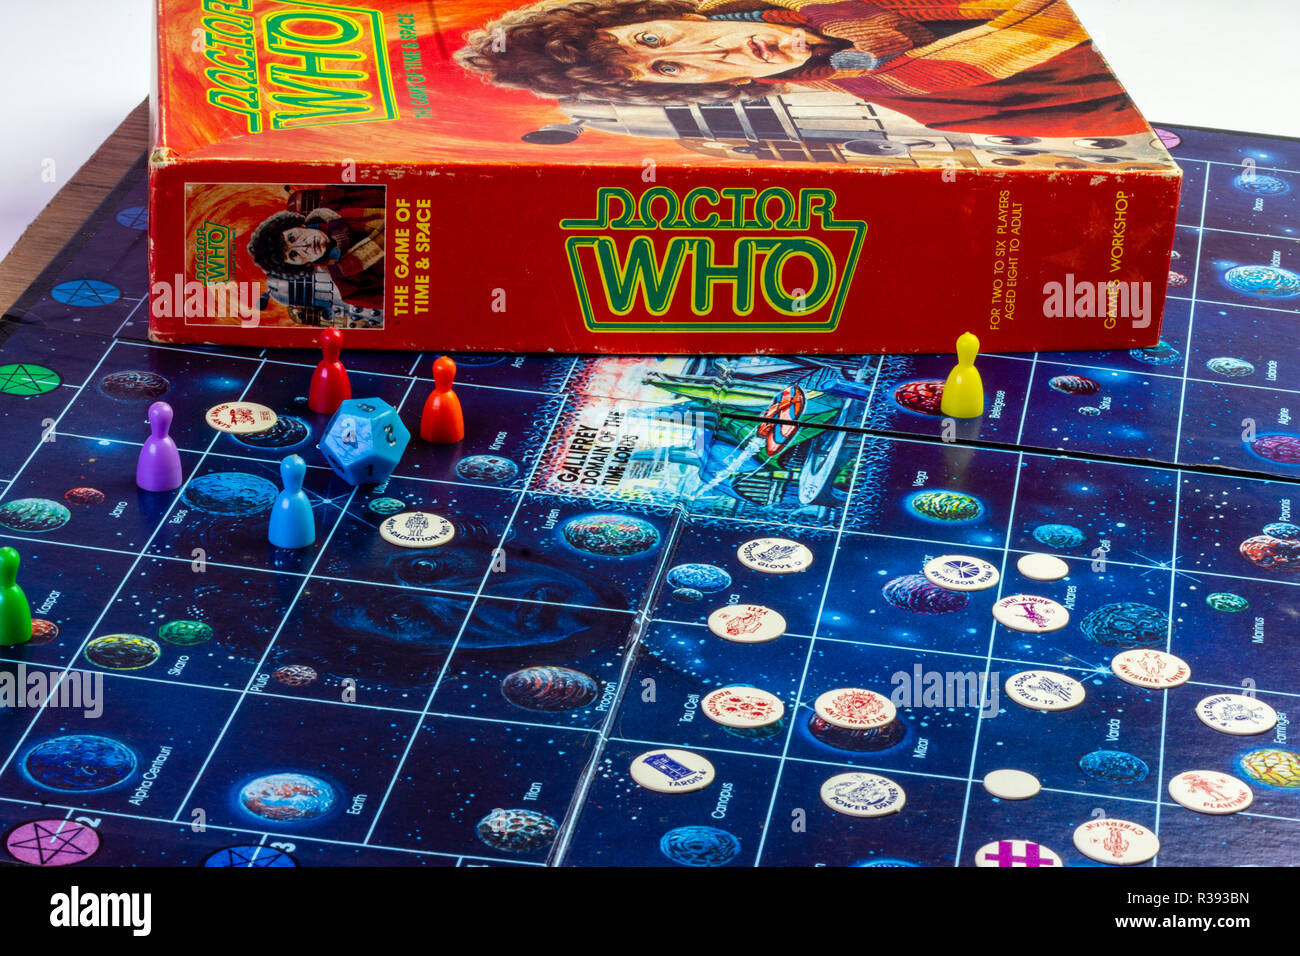 BBC 1980 Dr qui jeu de collection vintage, montrant, morceaux et fort, le jeu du temps et de l'espace, mettant en vedette Tom Baker, daleks, cybermen Banque D'Images